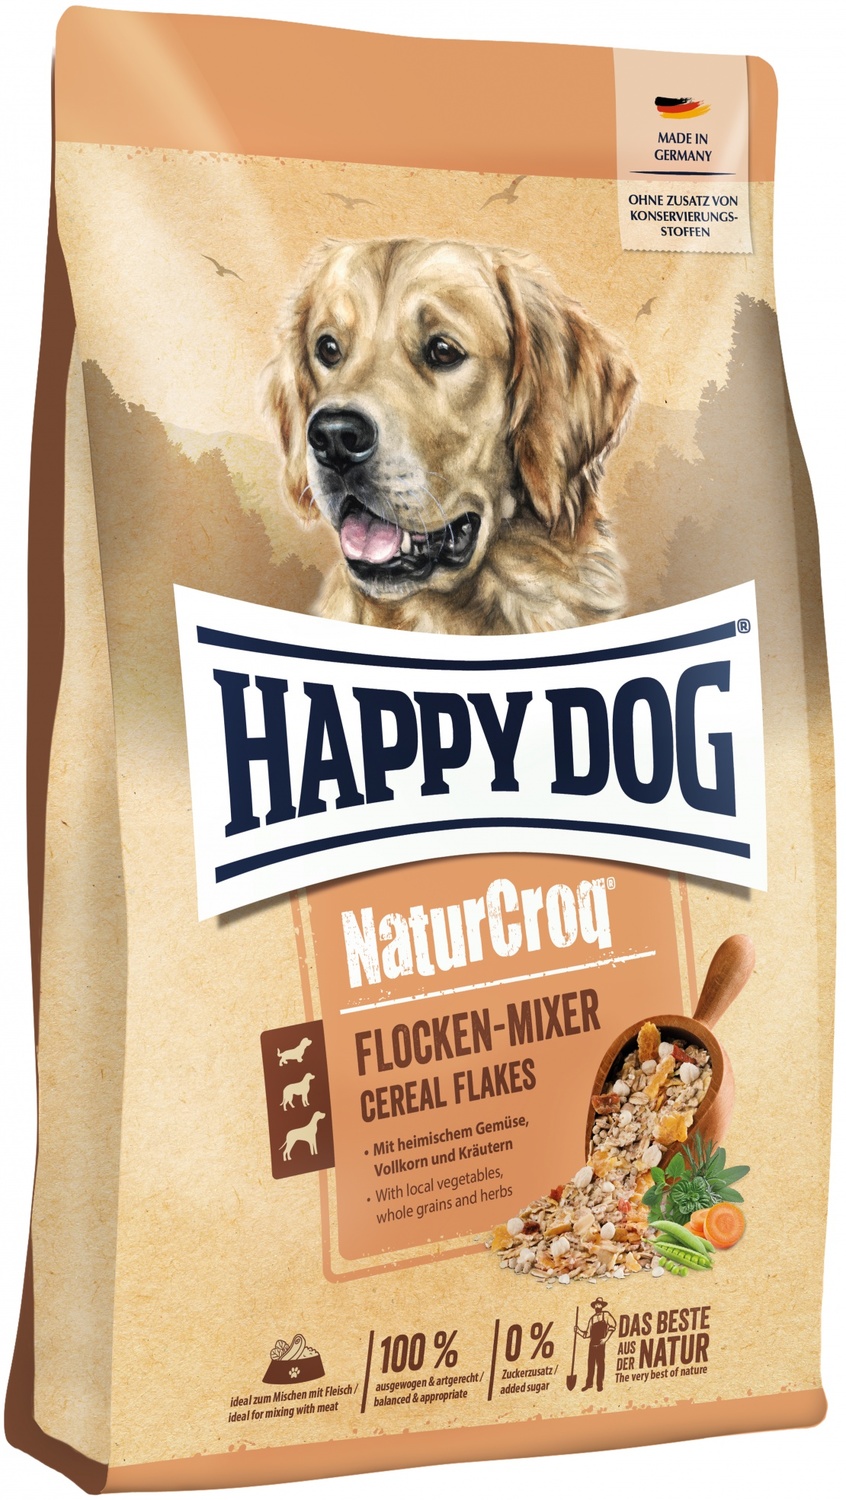 Happy Dog Naturcroq Flocken Mixer Cereal Flakes - Fulgi de cereale pentru câini